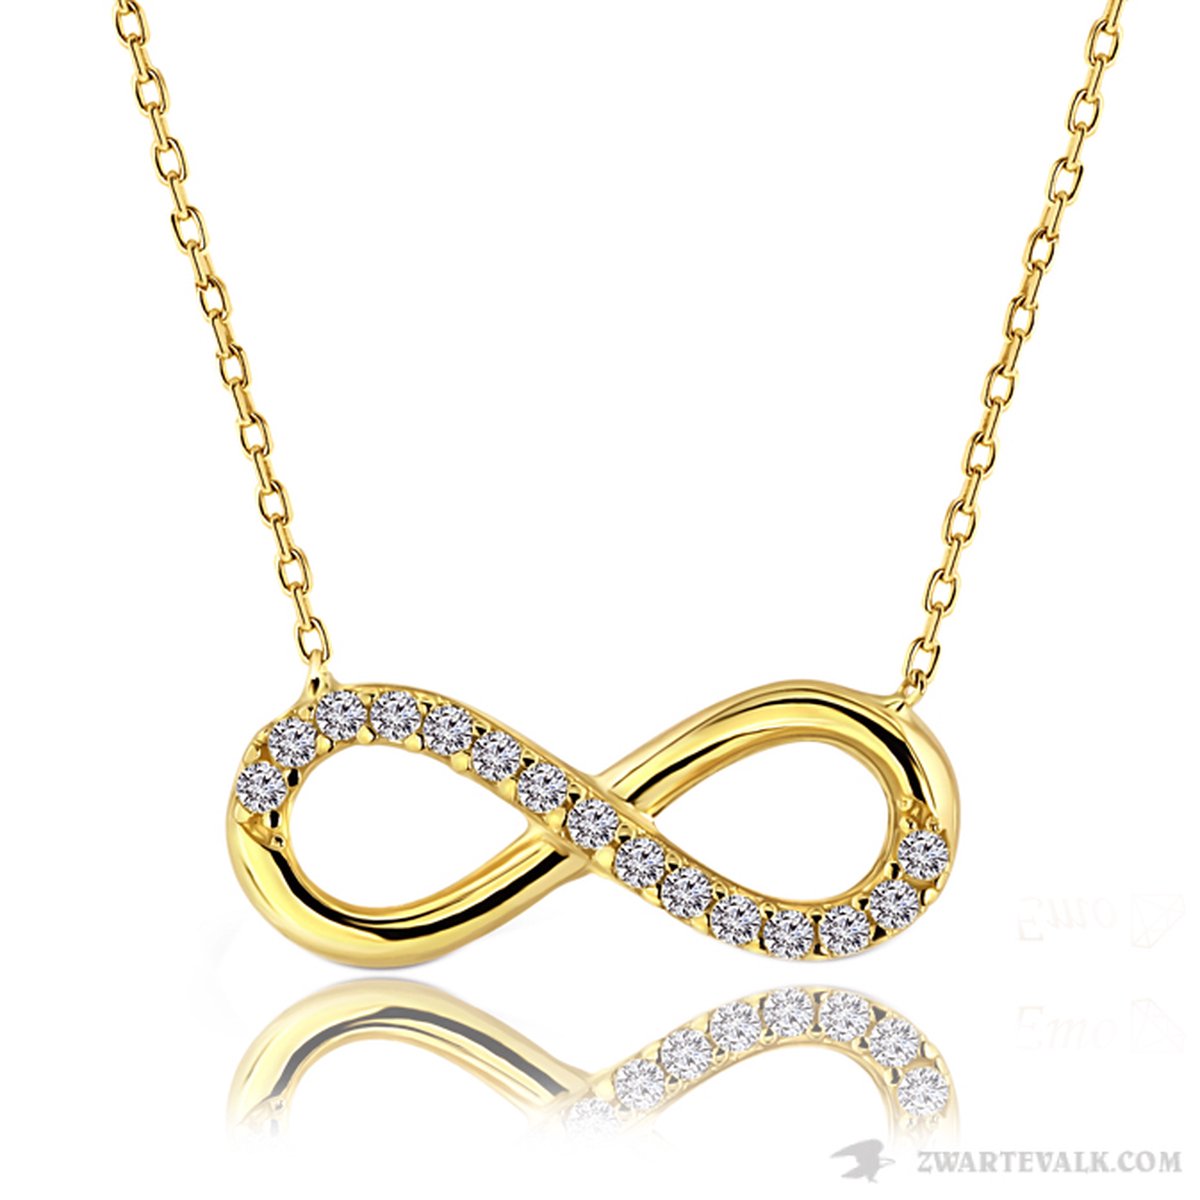 Juwelier Zwartevalk - 14 karaat gouden ketting met infinity hanger 15.076/44cm